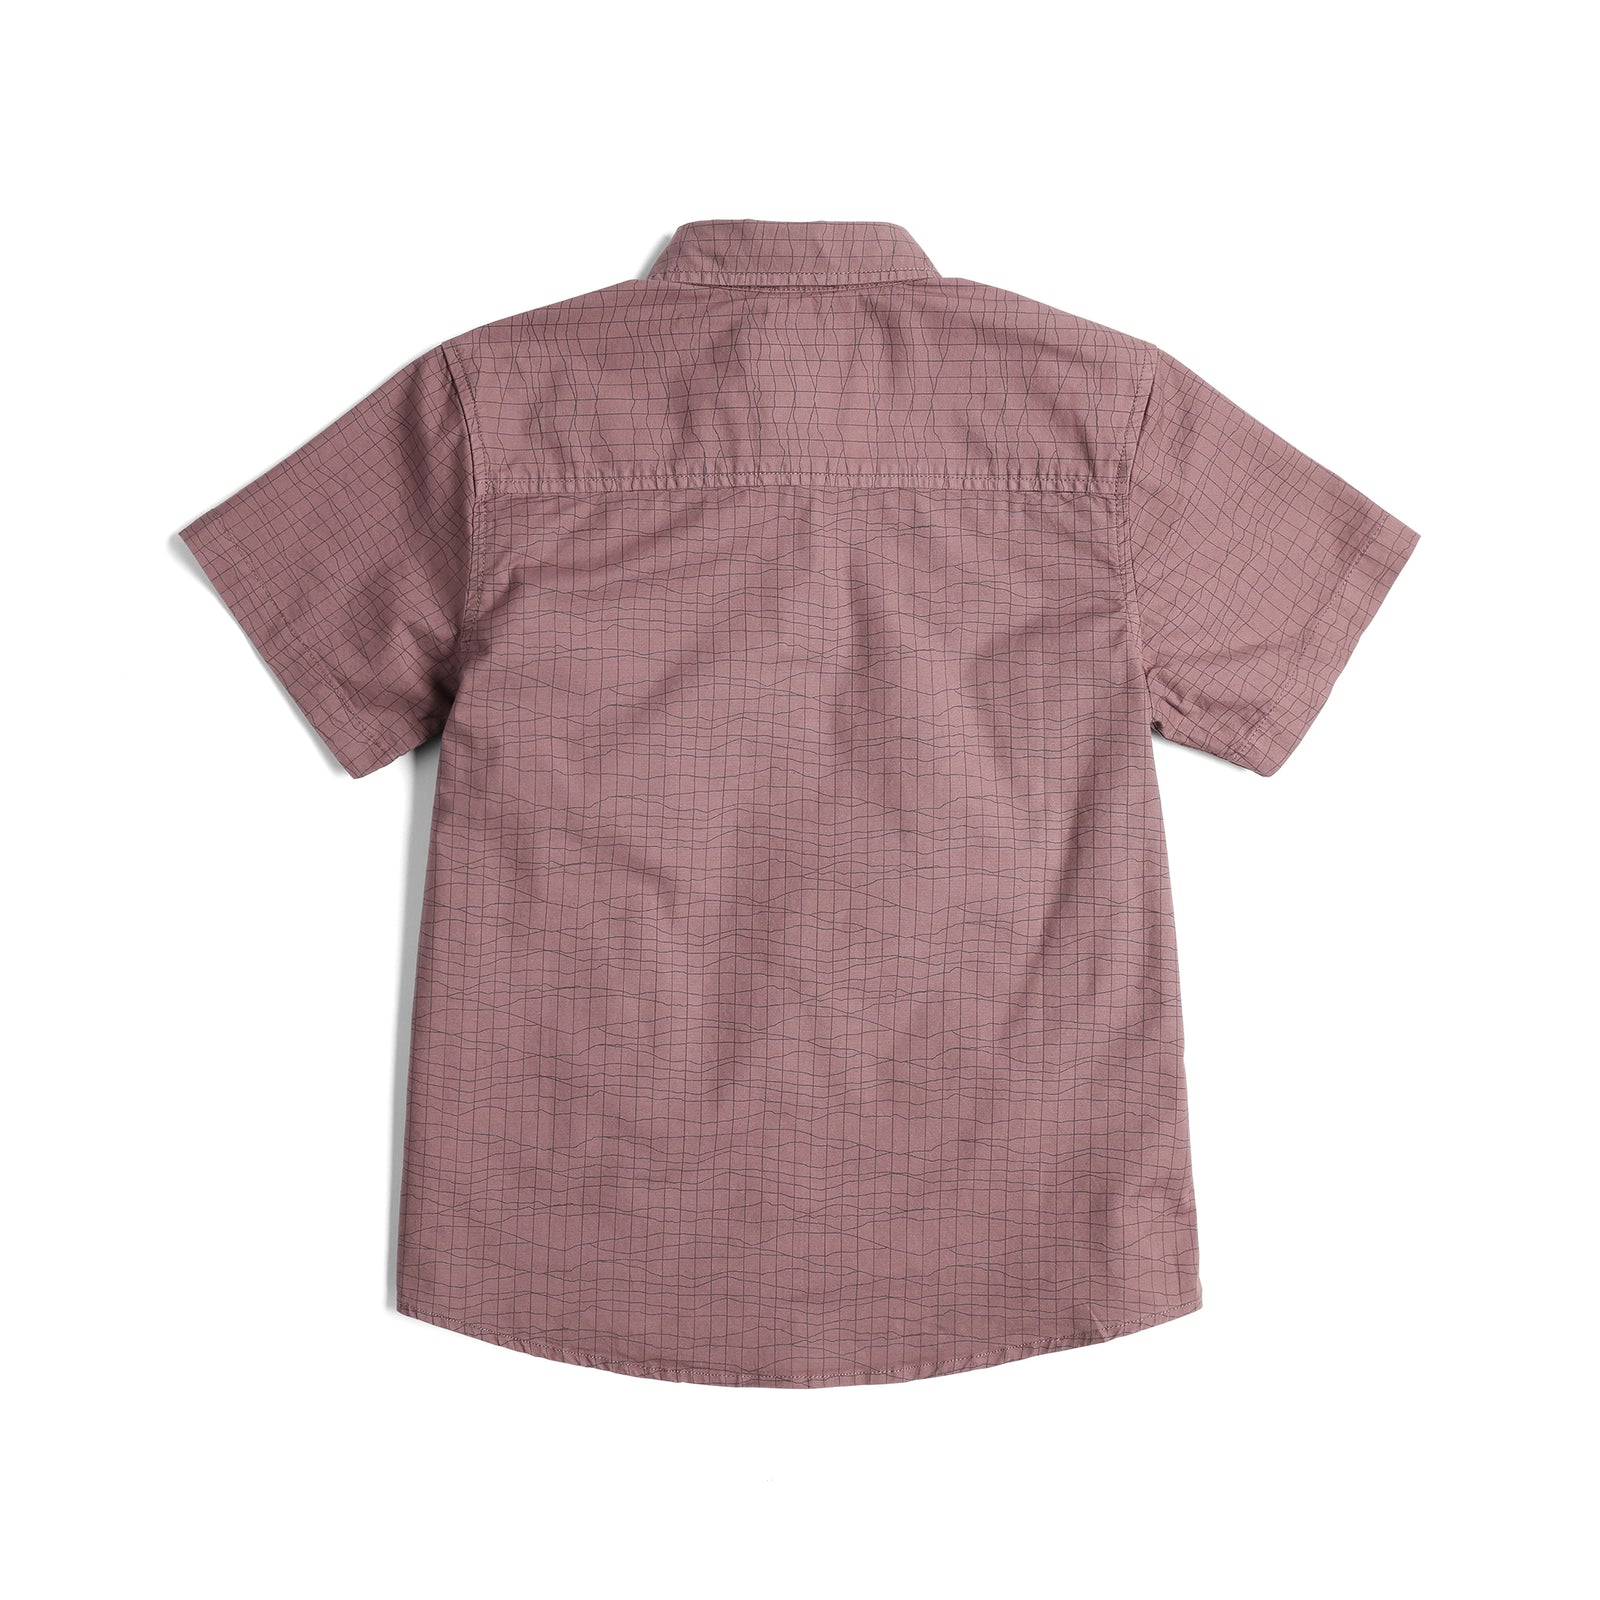 Back View of Topo Designs Dirt Desert Shirt Ss - Women's in "Peppercorn Terrain"